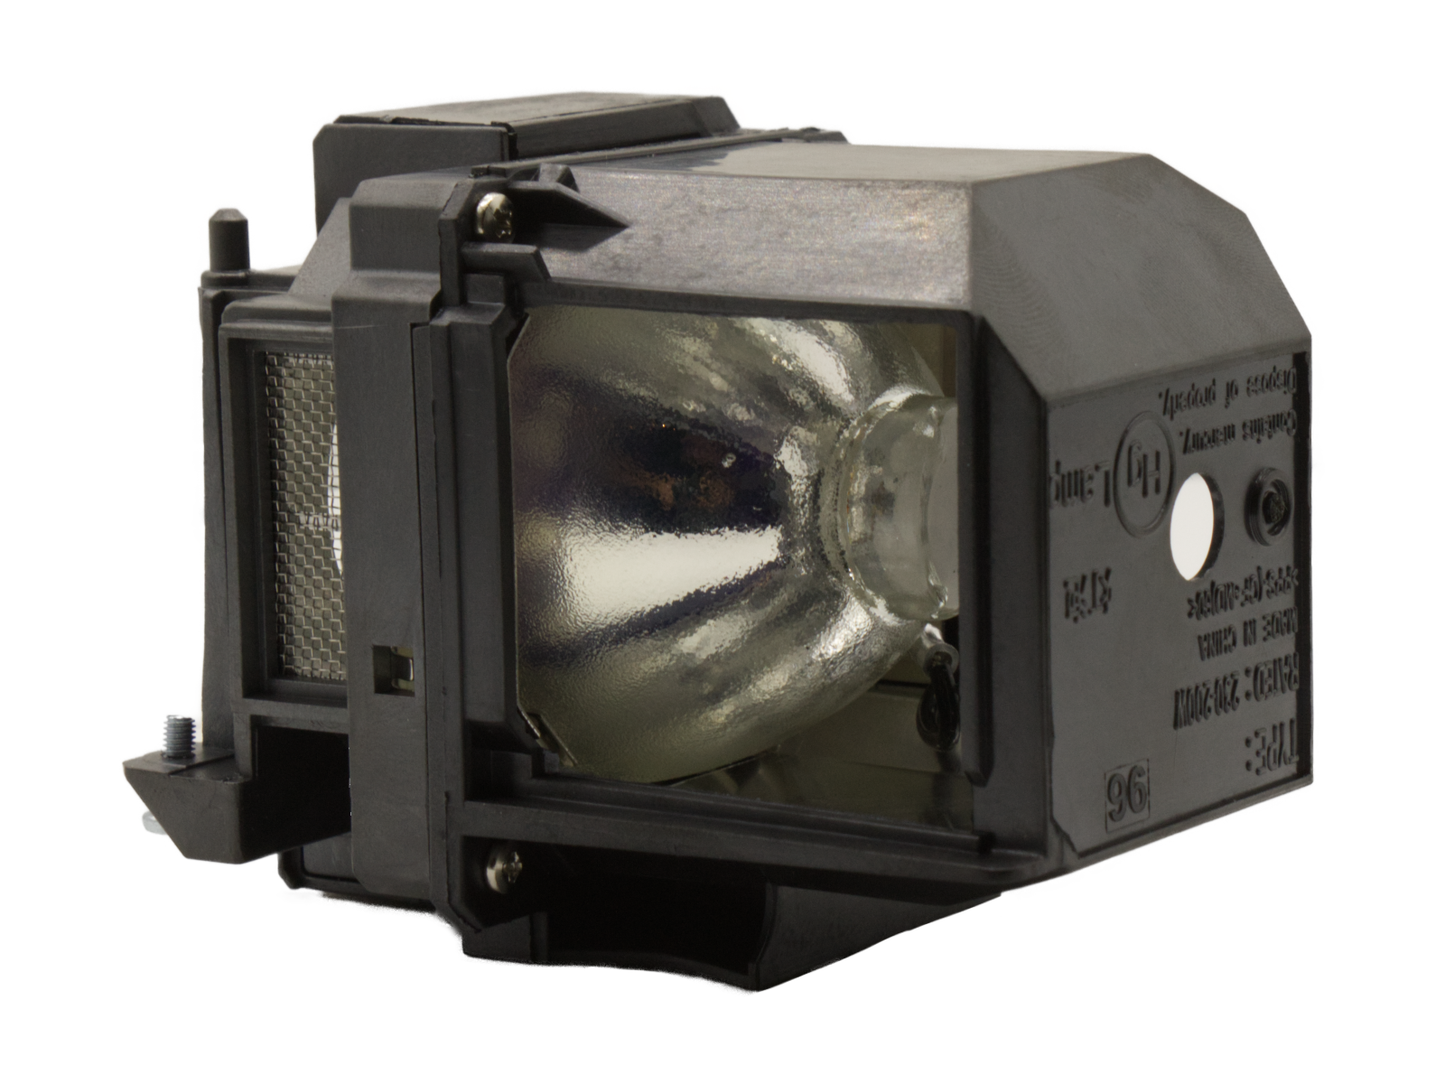 azurano Beamerlampe für EPSON ELPLP96 mit Gehäuse für EPSON Beamer Projektoren EH-, EB-, EX-, VS-, PowerLite- & HomeCinema-Serie, Ersatzlampe mit Gehäuse, 245W - Bild 5